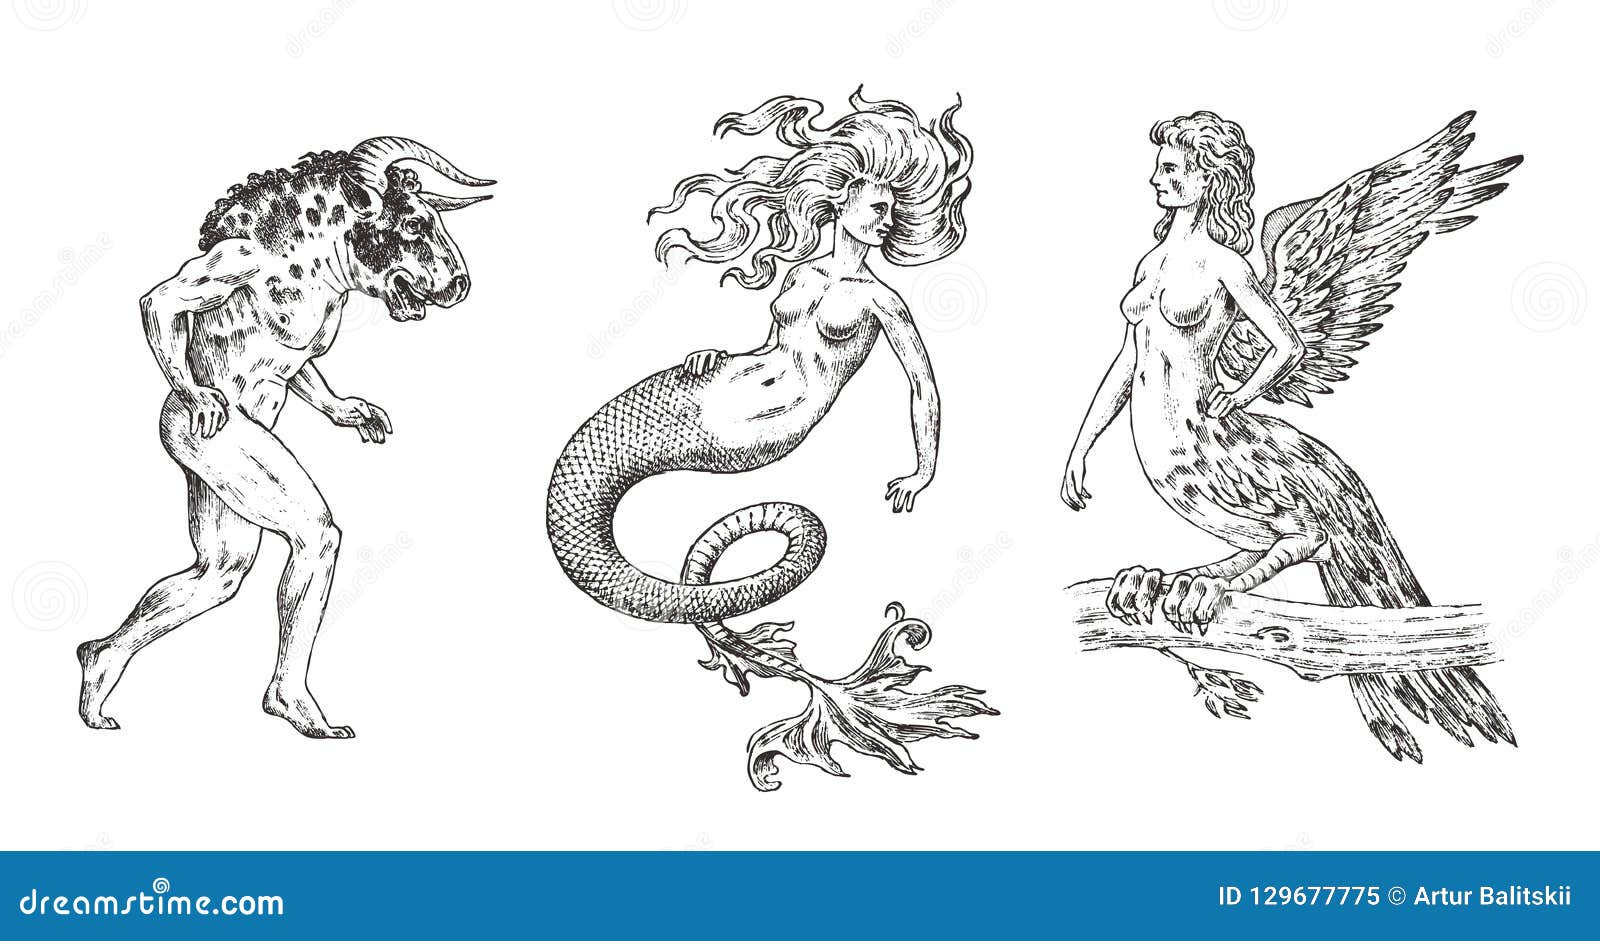 Sirena en la mitologia griega